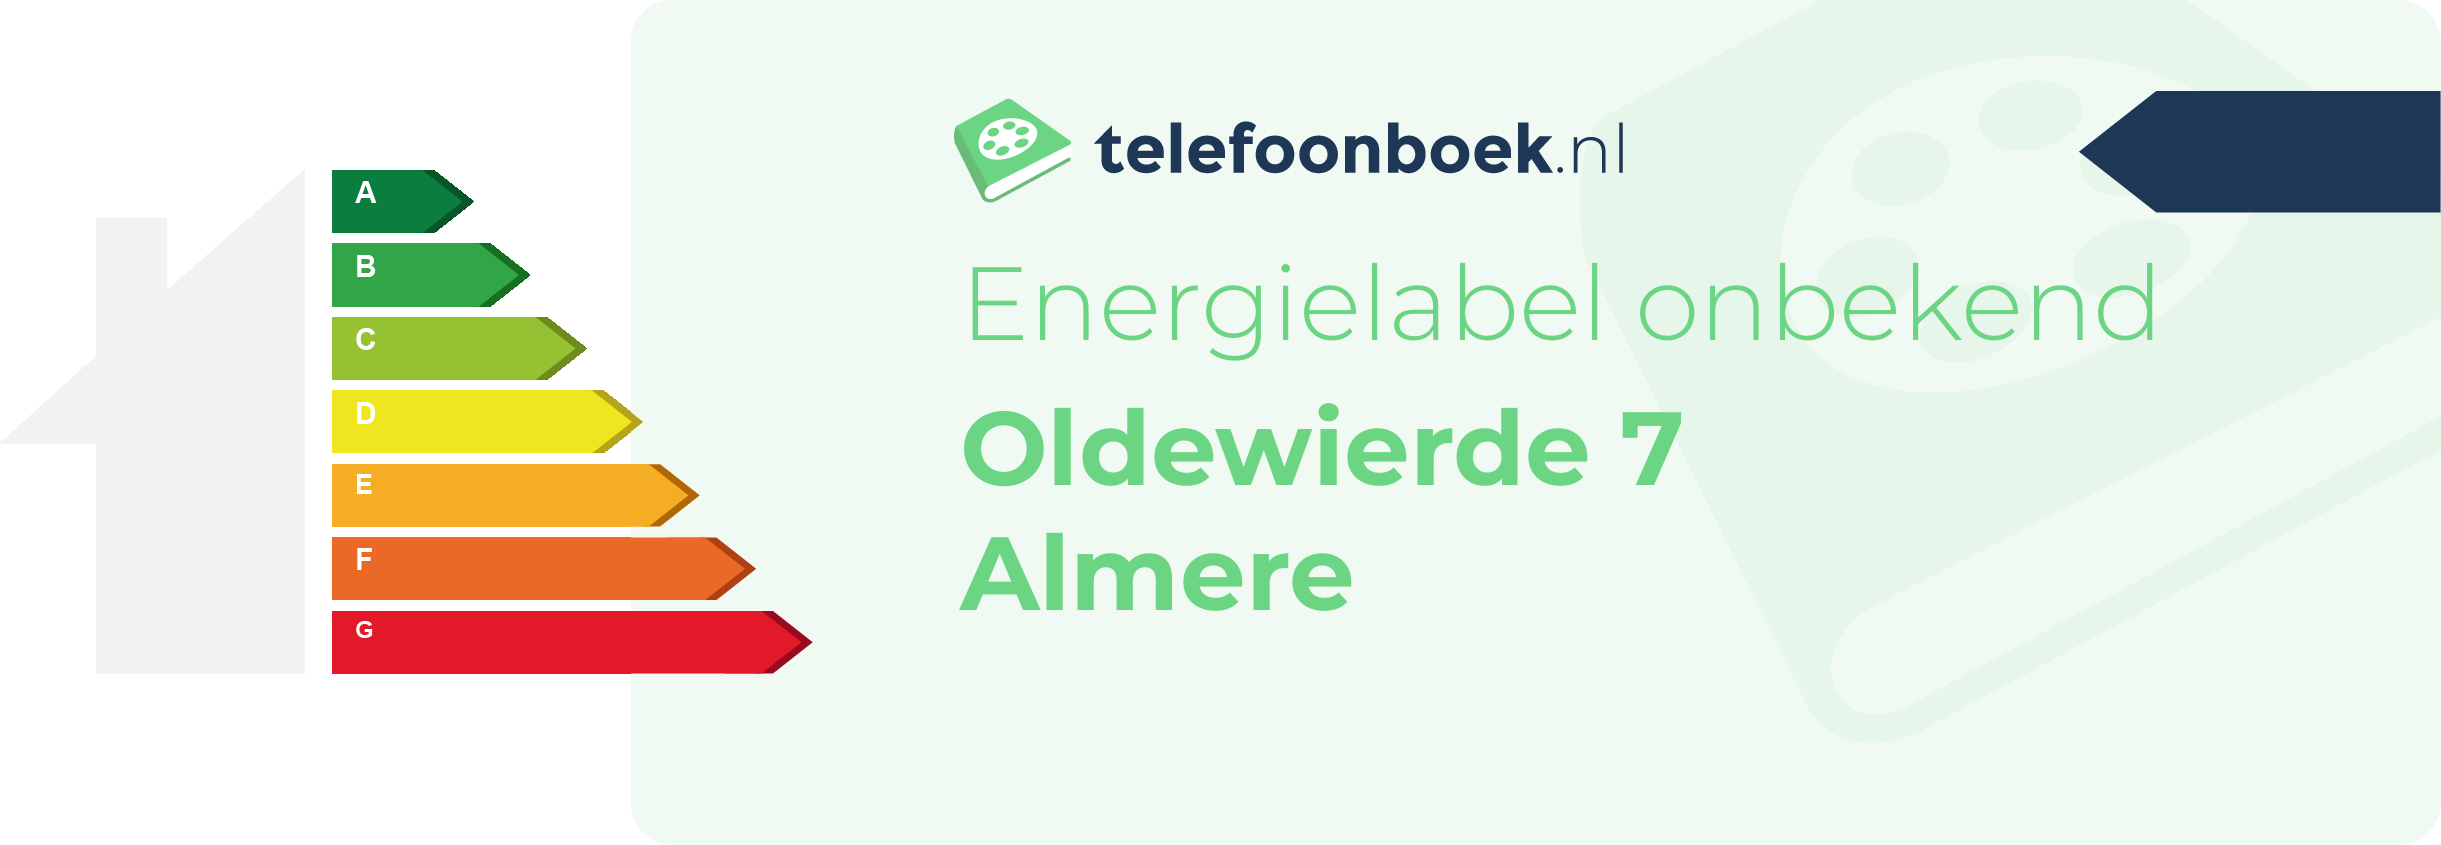 Energielabel Oldewierde 7 Almere